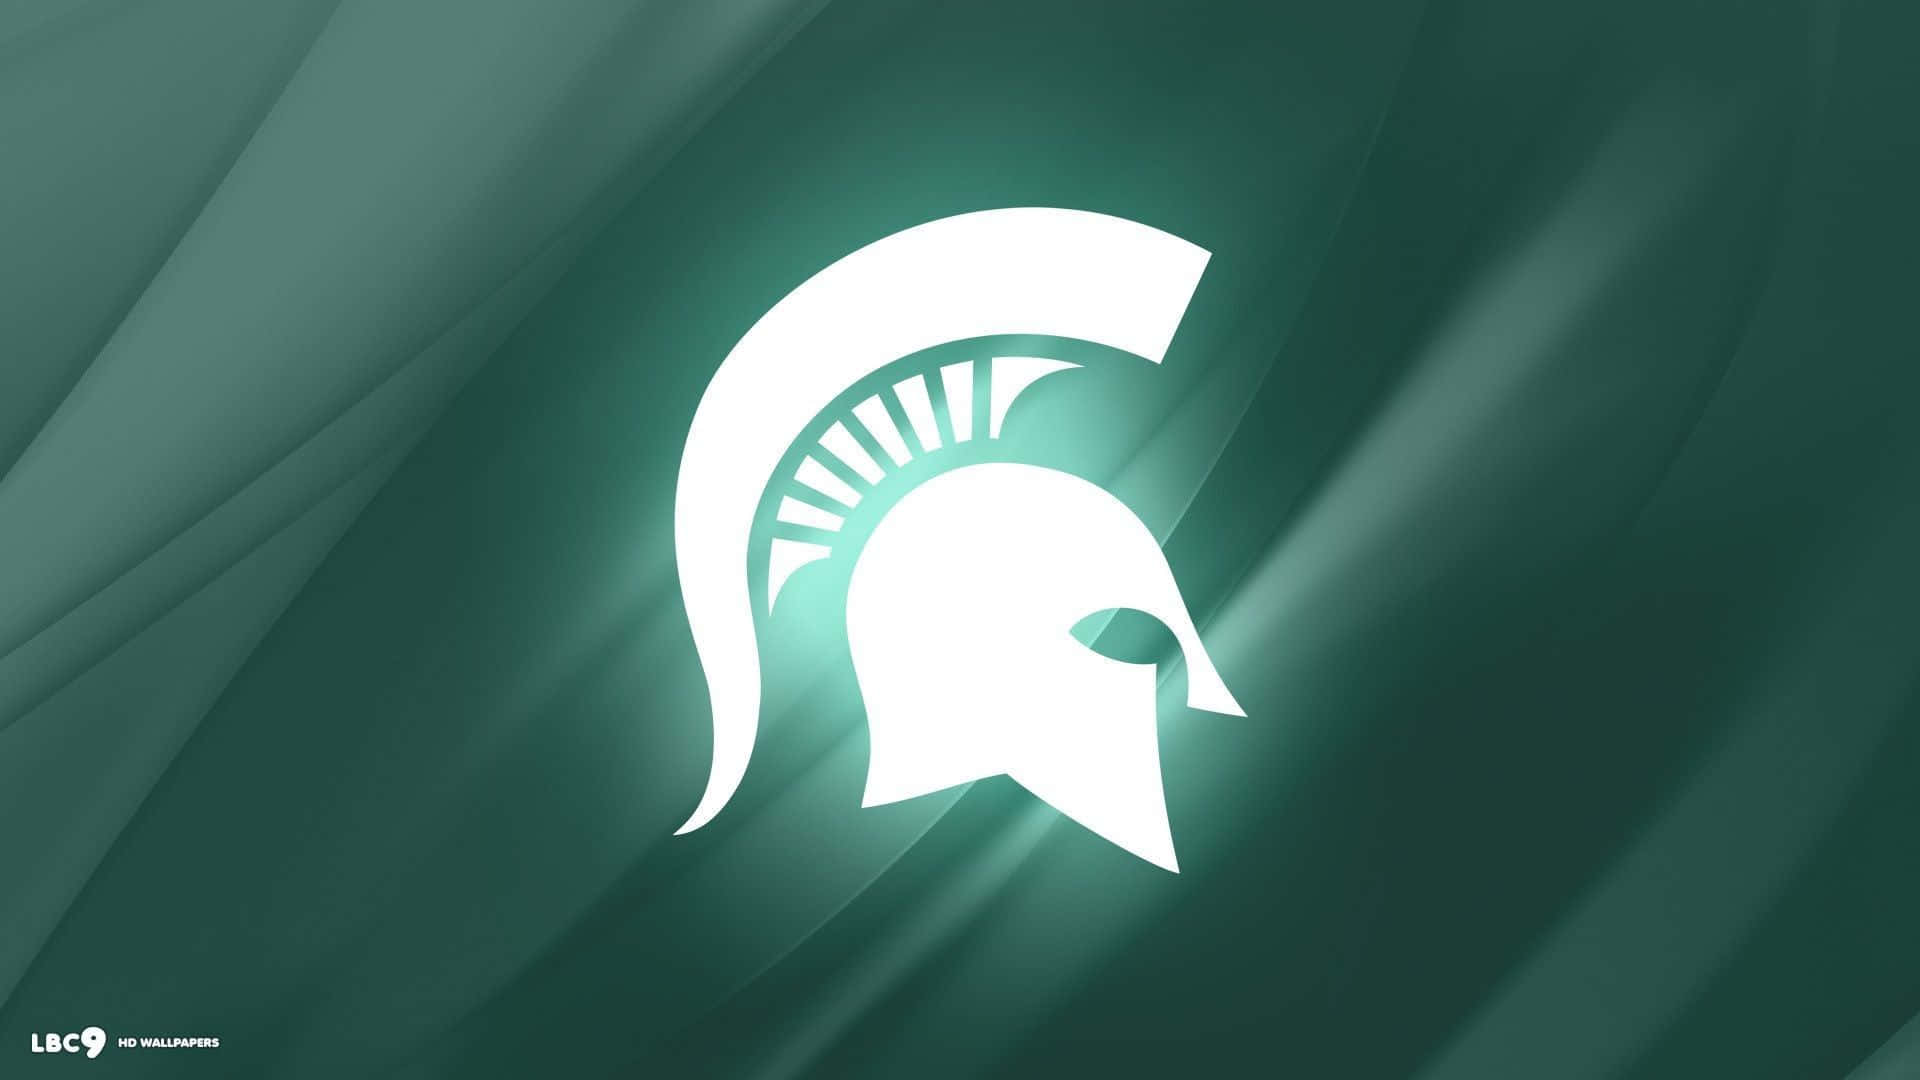 Michiganstate Spartans-logo På En Grøn Baggrund. Wallpaper